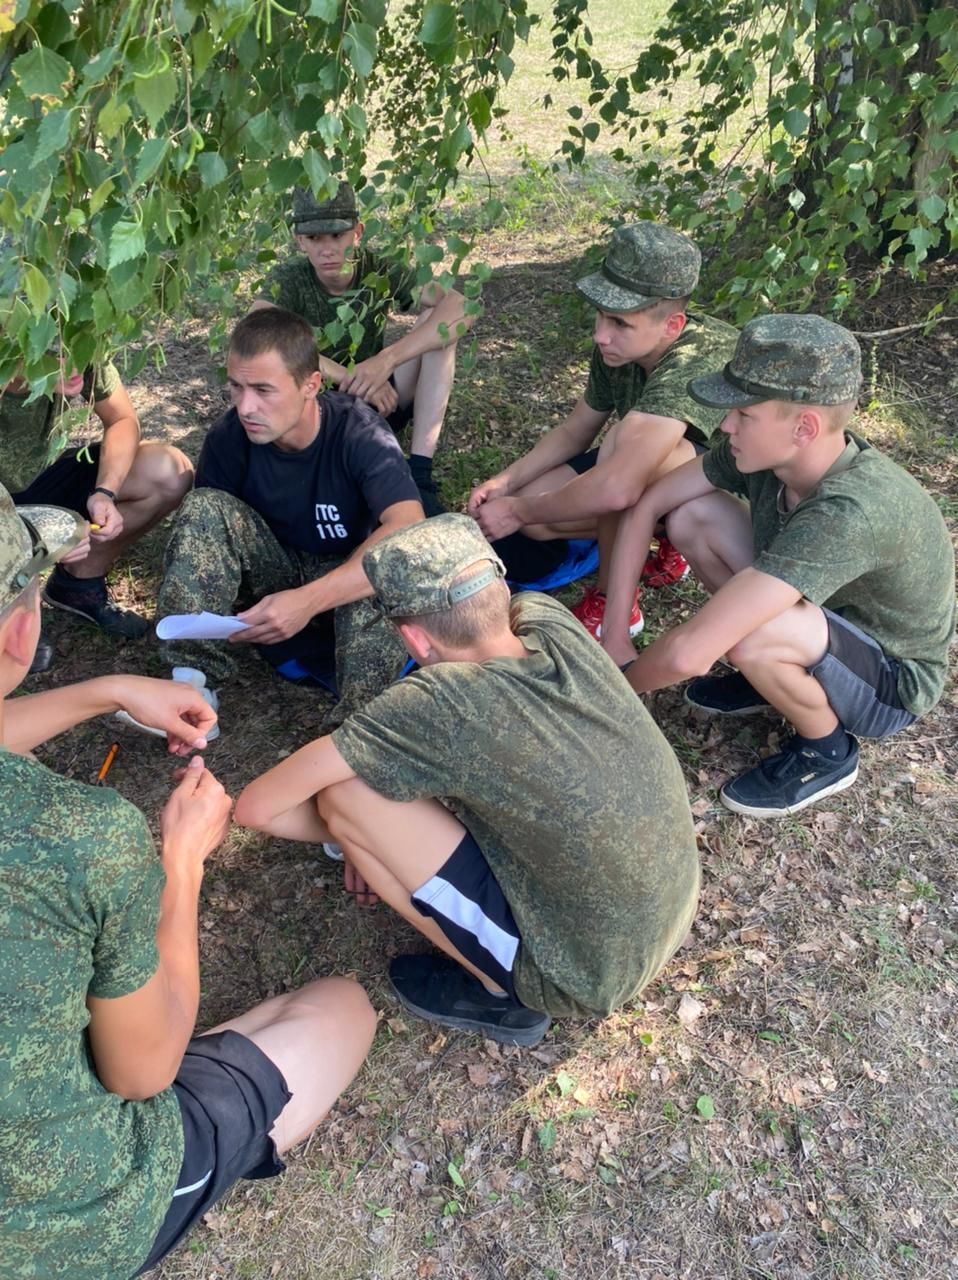 Тетюшские кадеты прошли парашютно-десантную подготовку